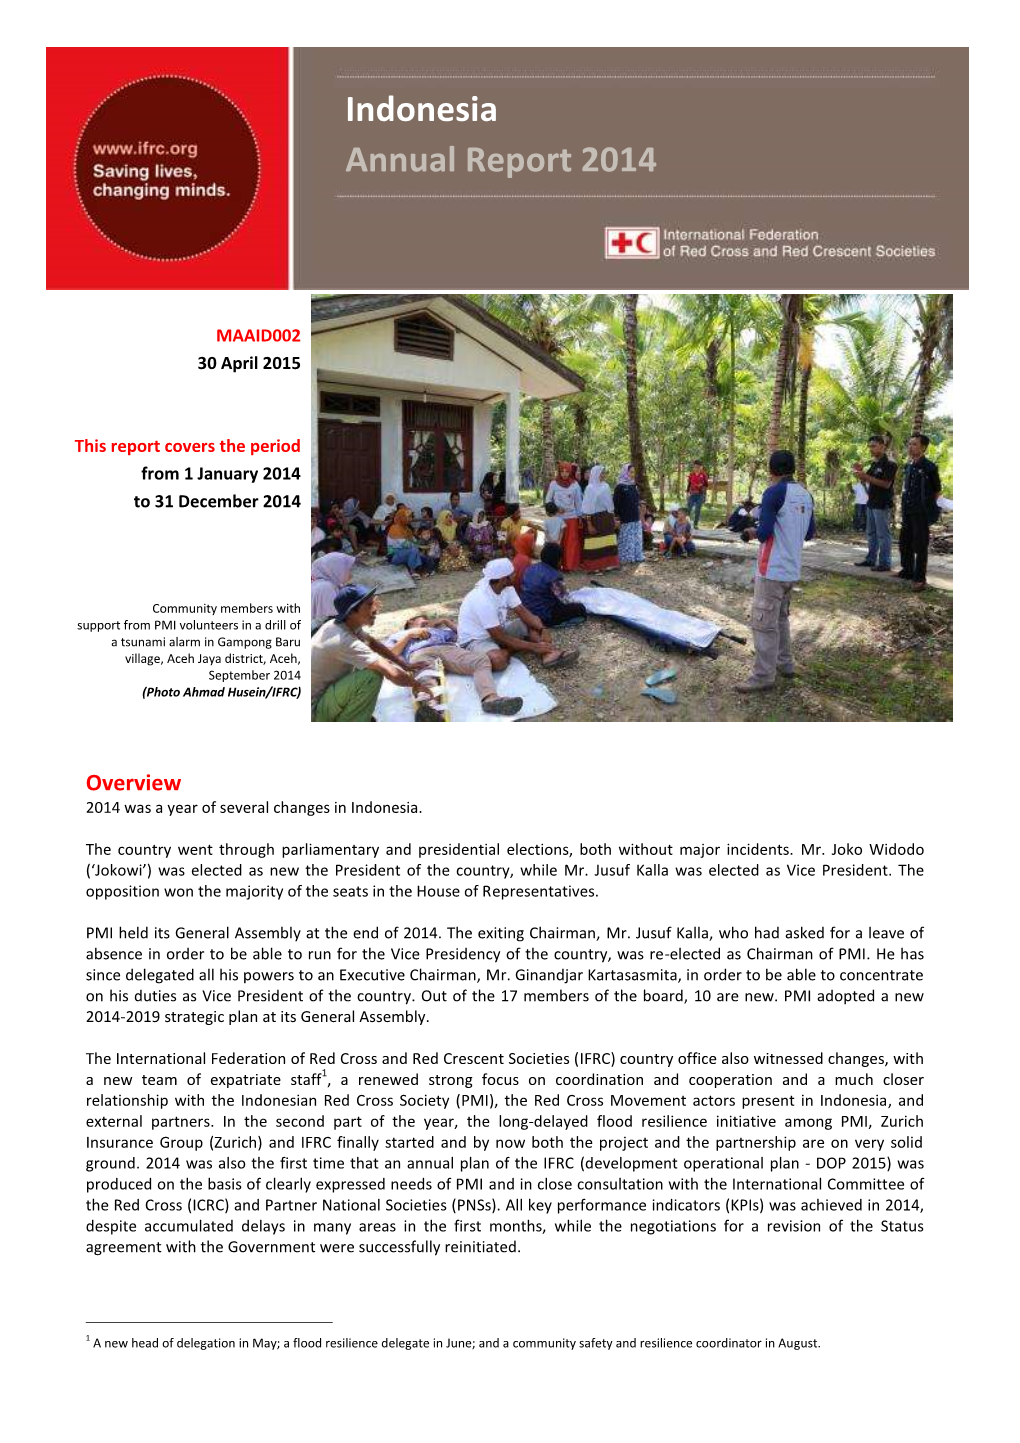 Indonesia Annual Report 2014